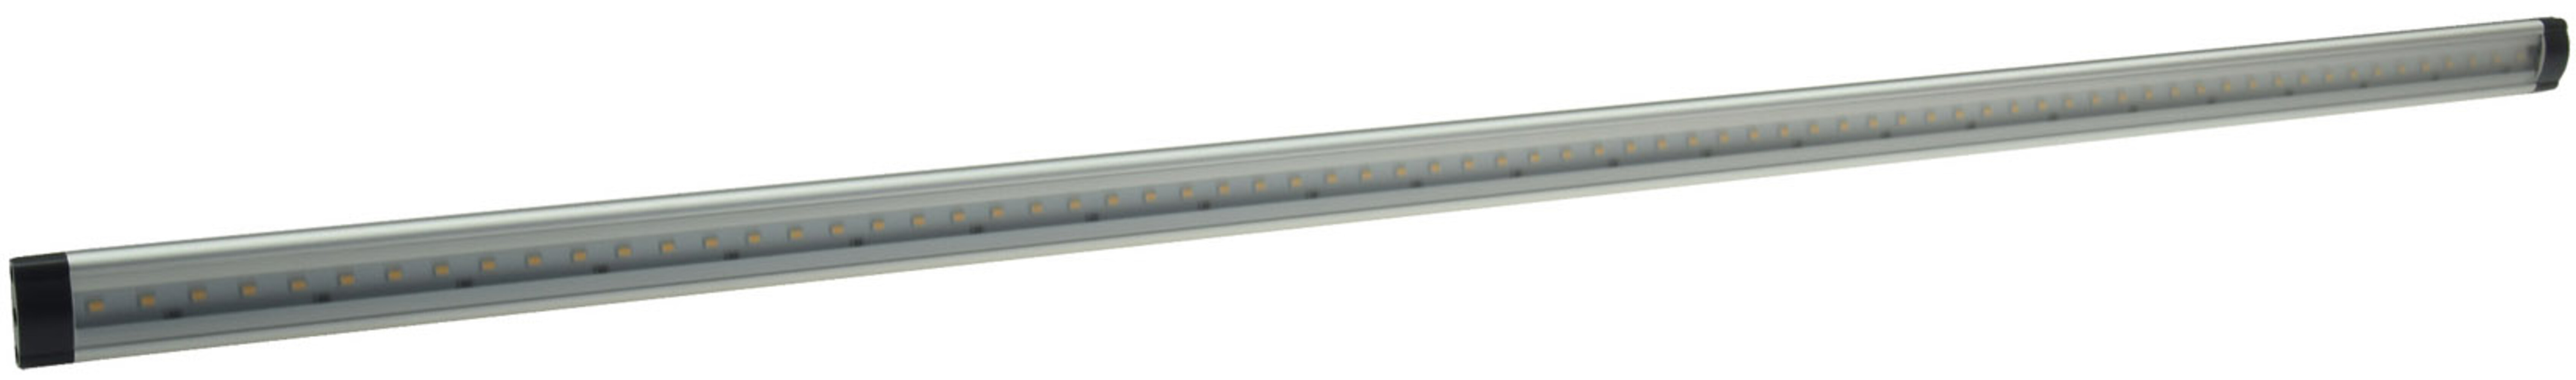 LED Unterbauleuchte CT-FL50 50cm 430lm, 5 Watt, 4200K / tageslicht weiß, Chilitec, Ohne Infrarotsensor, Unterbau- & Kabinettleuchten, Innenleuchten